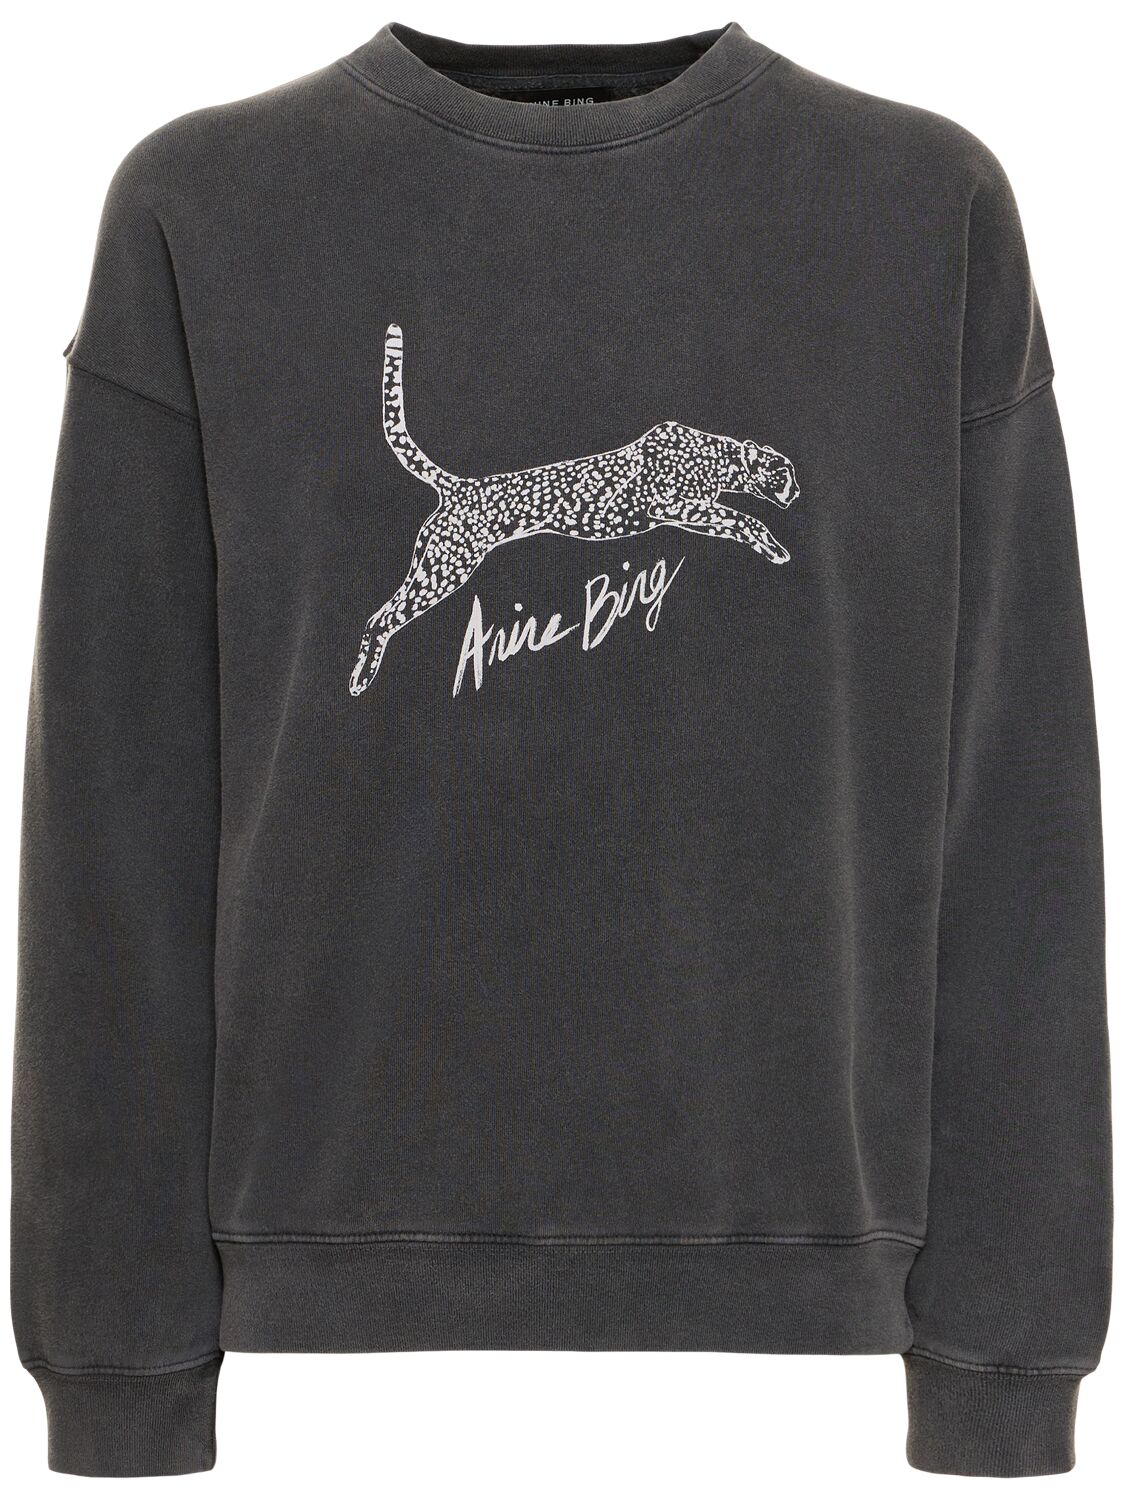 Spencer Spotted Leopard Sweatshirt - ANINE BING - Modalova